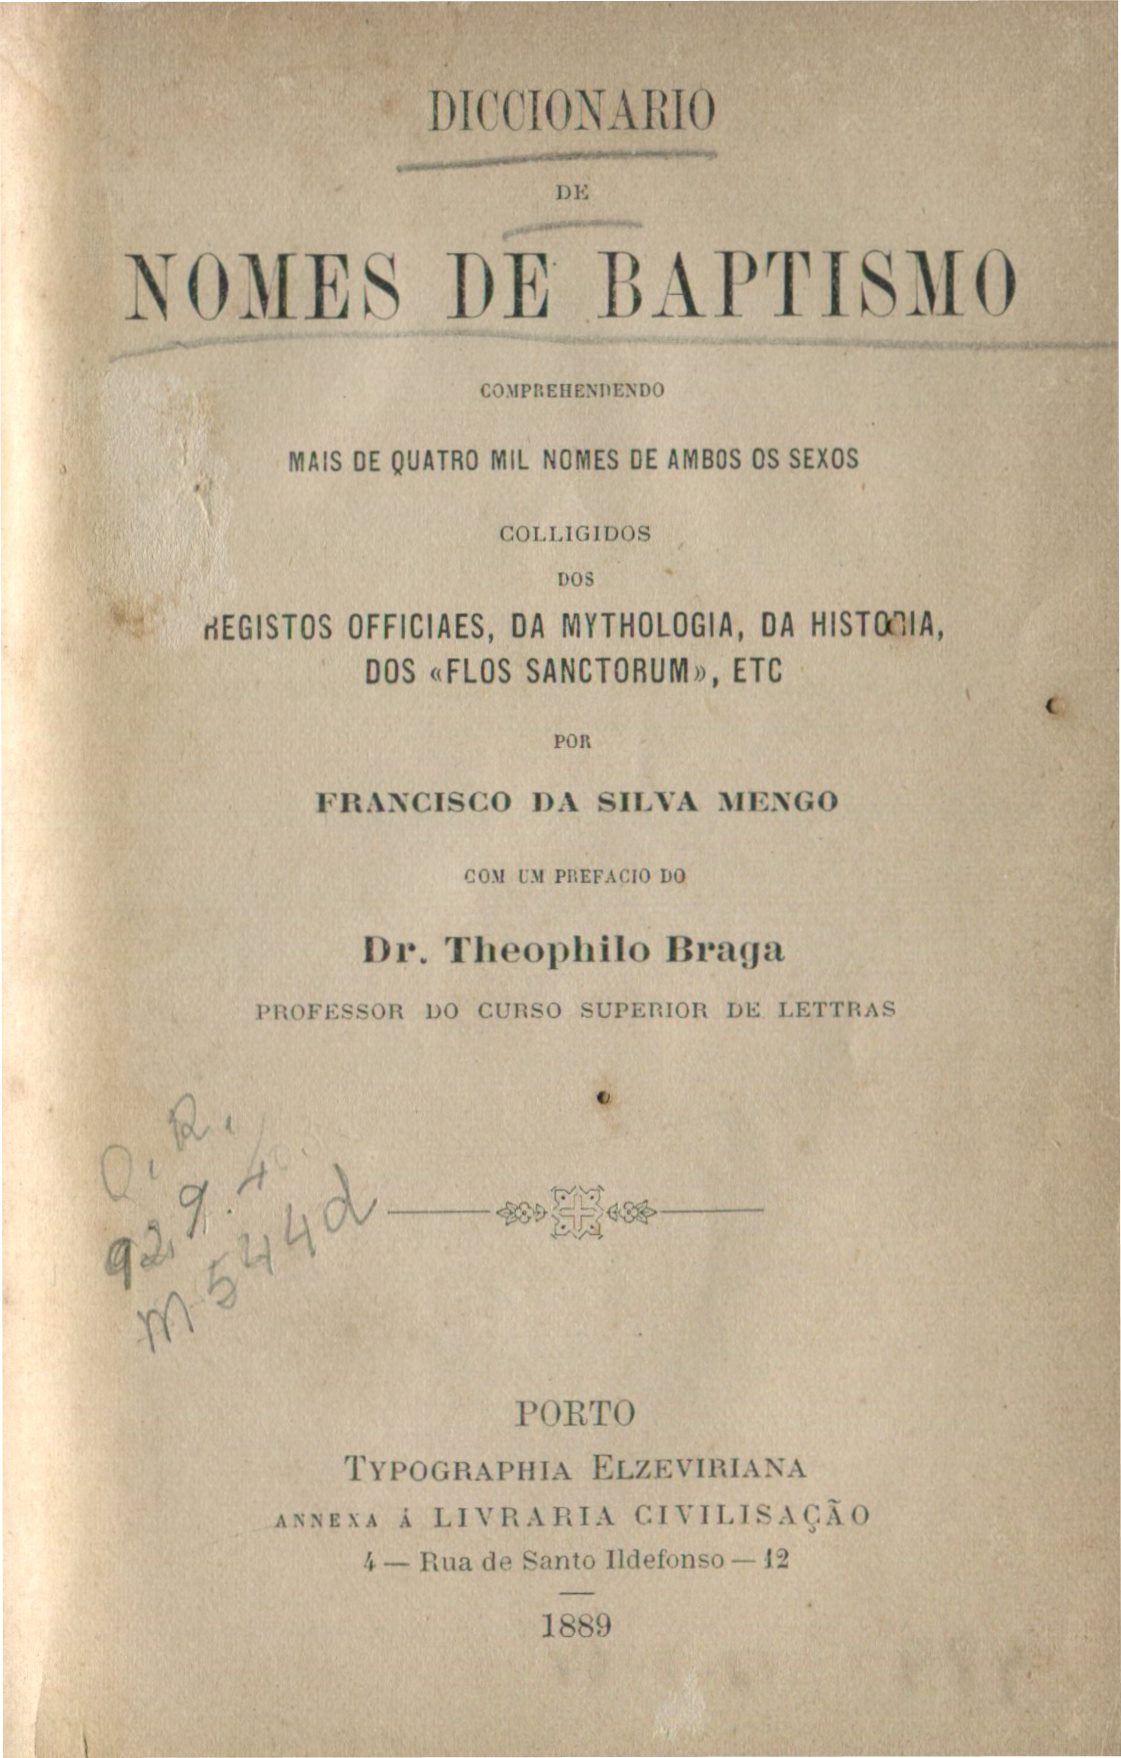 Capa do Livro Diccionario de Nomes de Baptismo